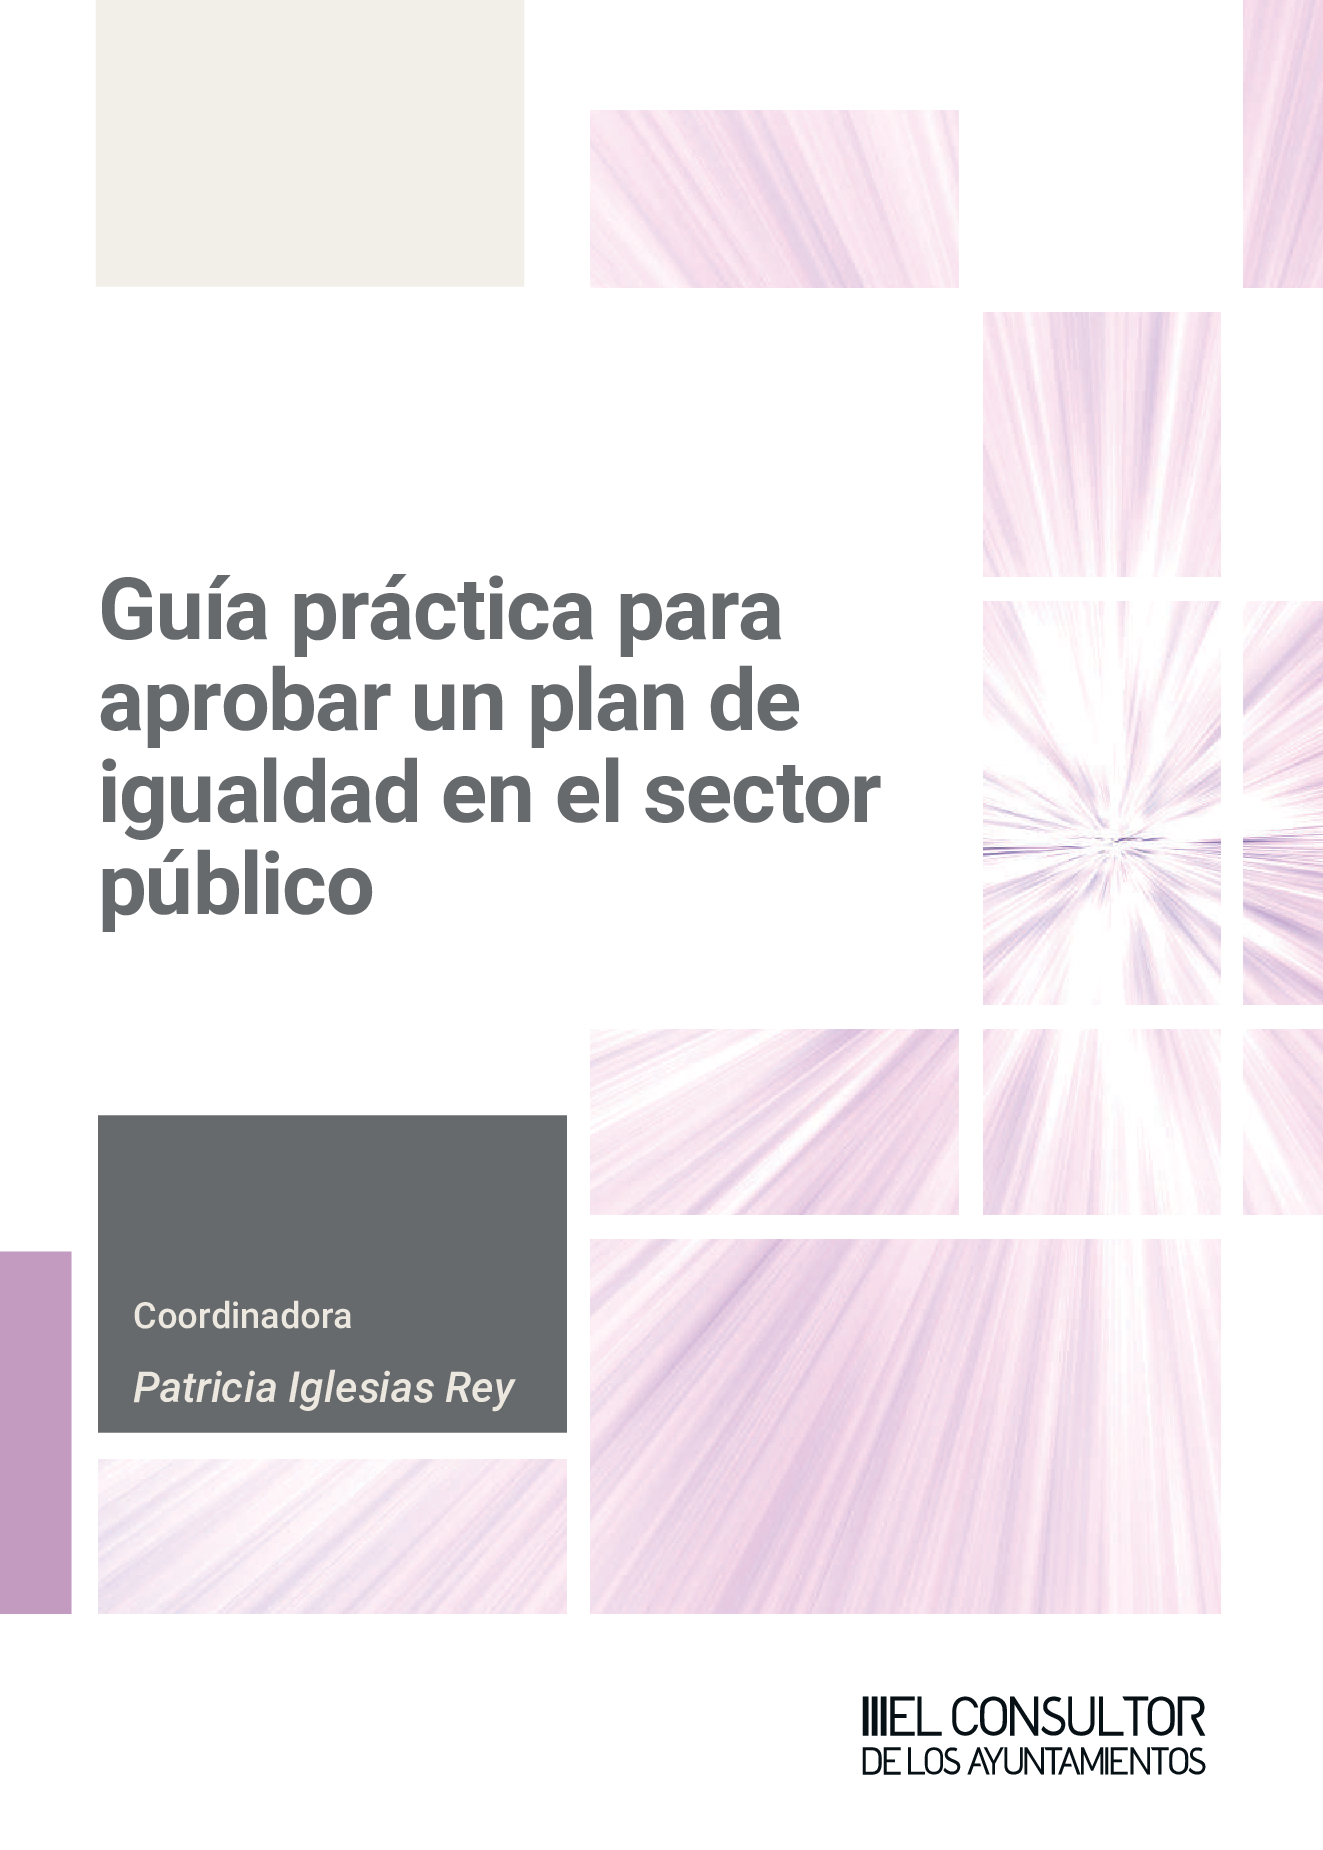 Guía práctica para aprobar un plan de igualdad sector público